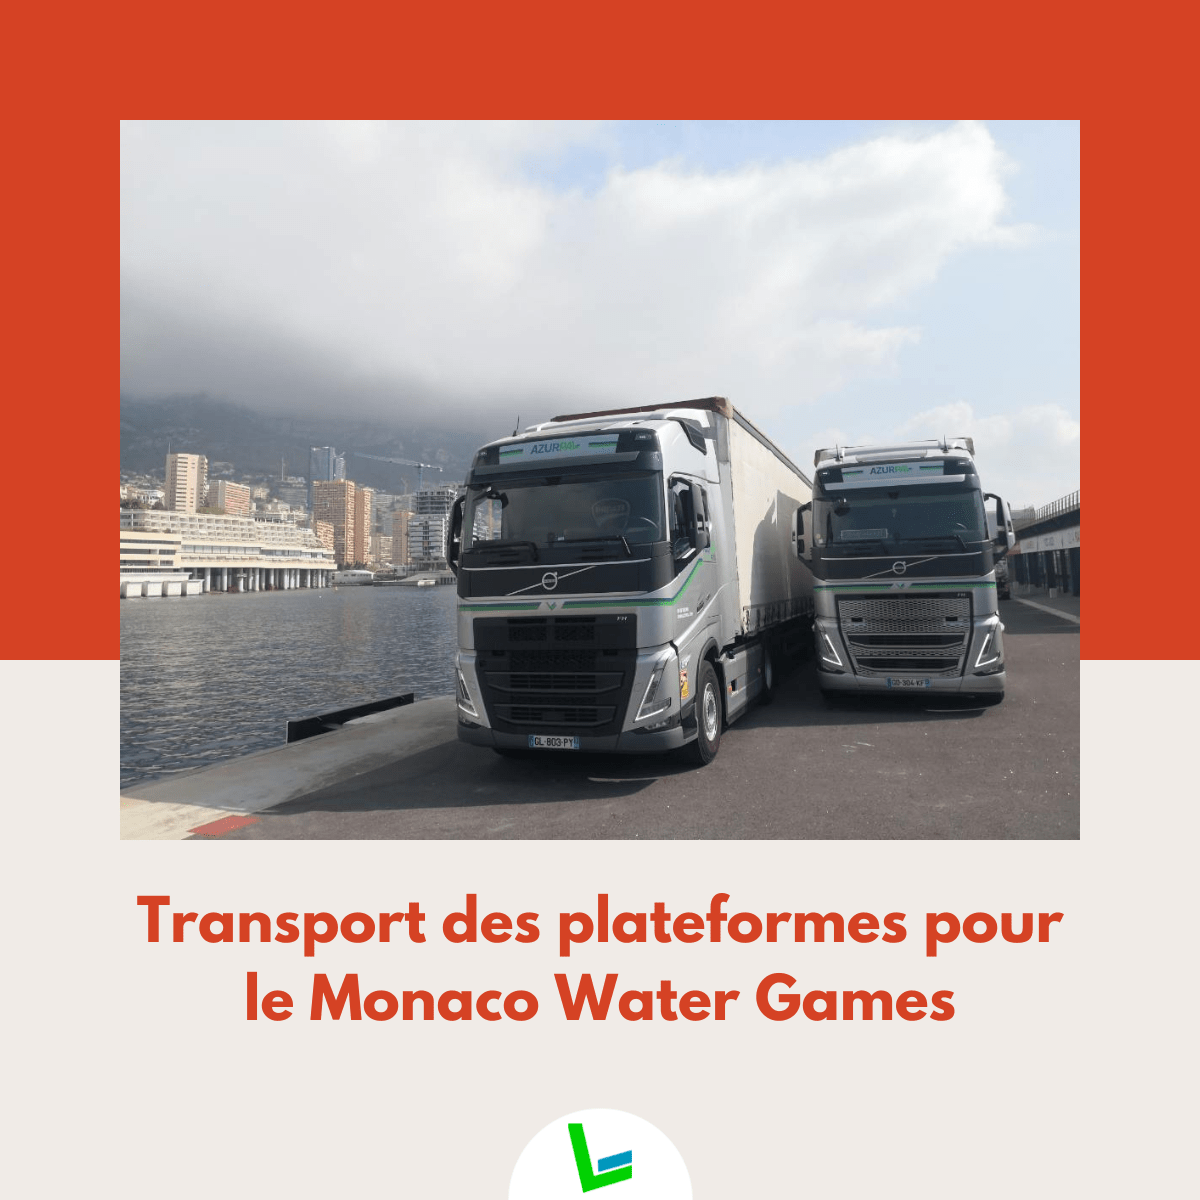 Transport des plateformes pour le Monaco Water Games